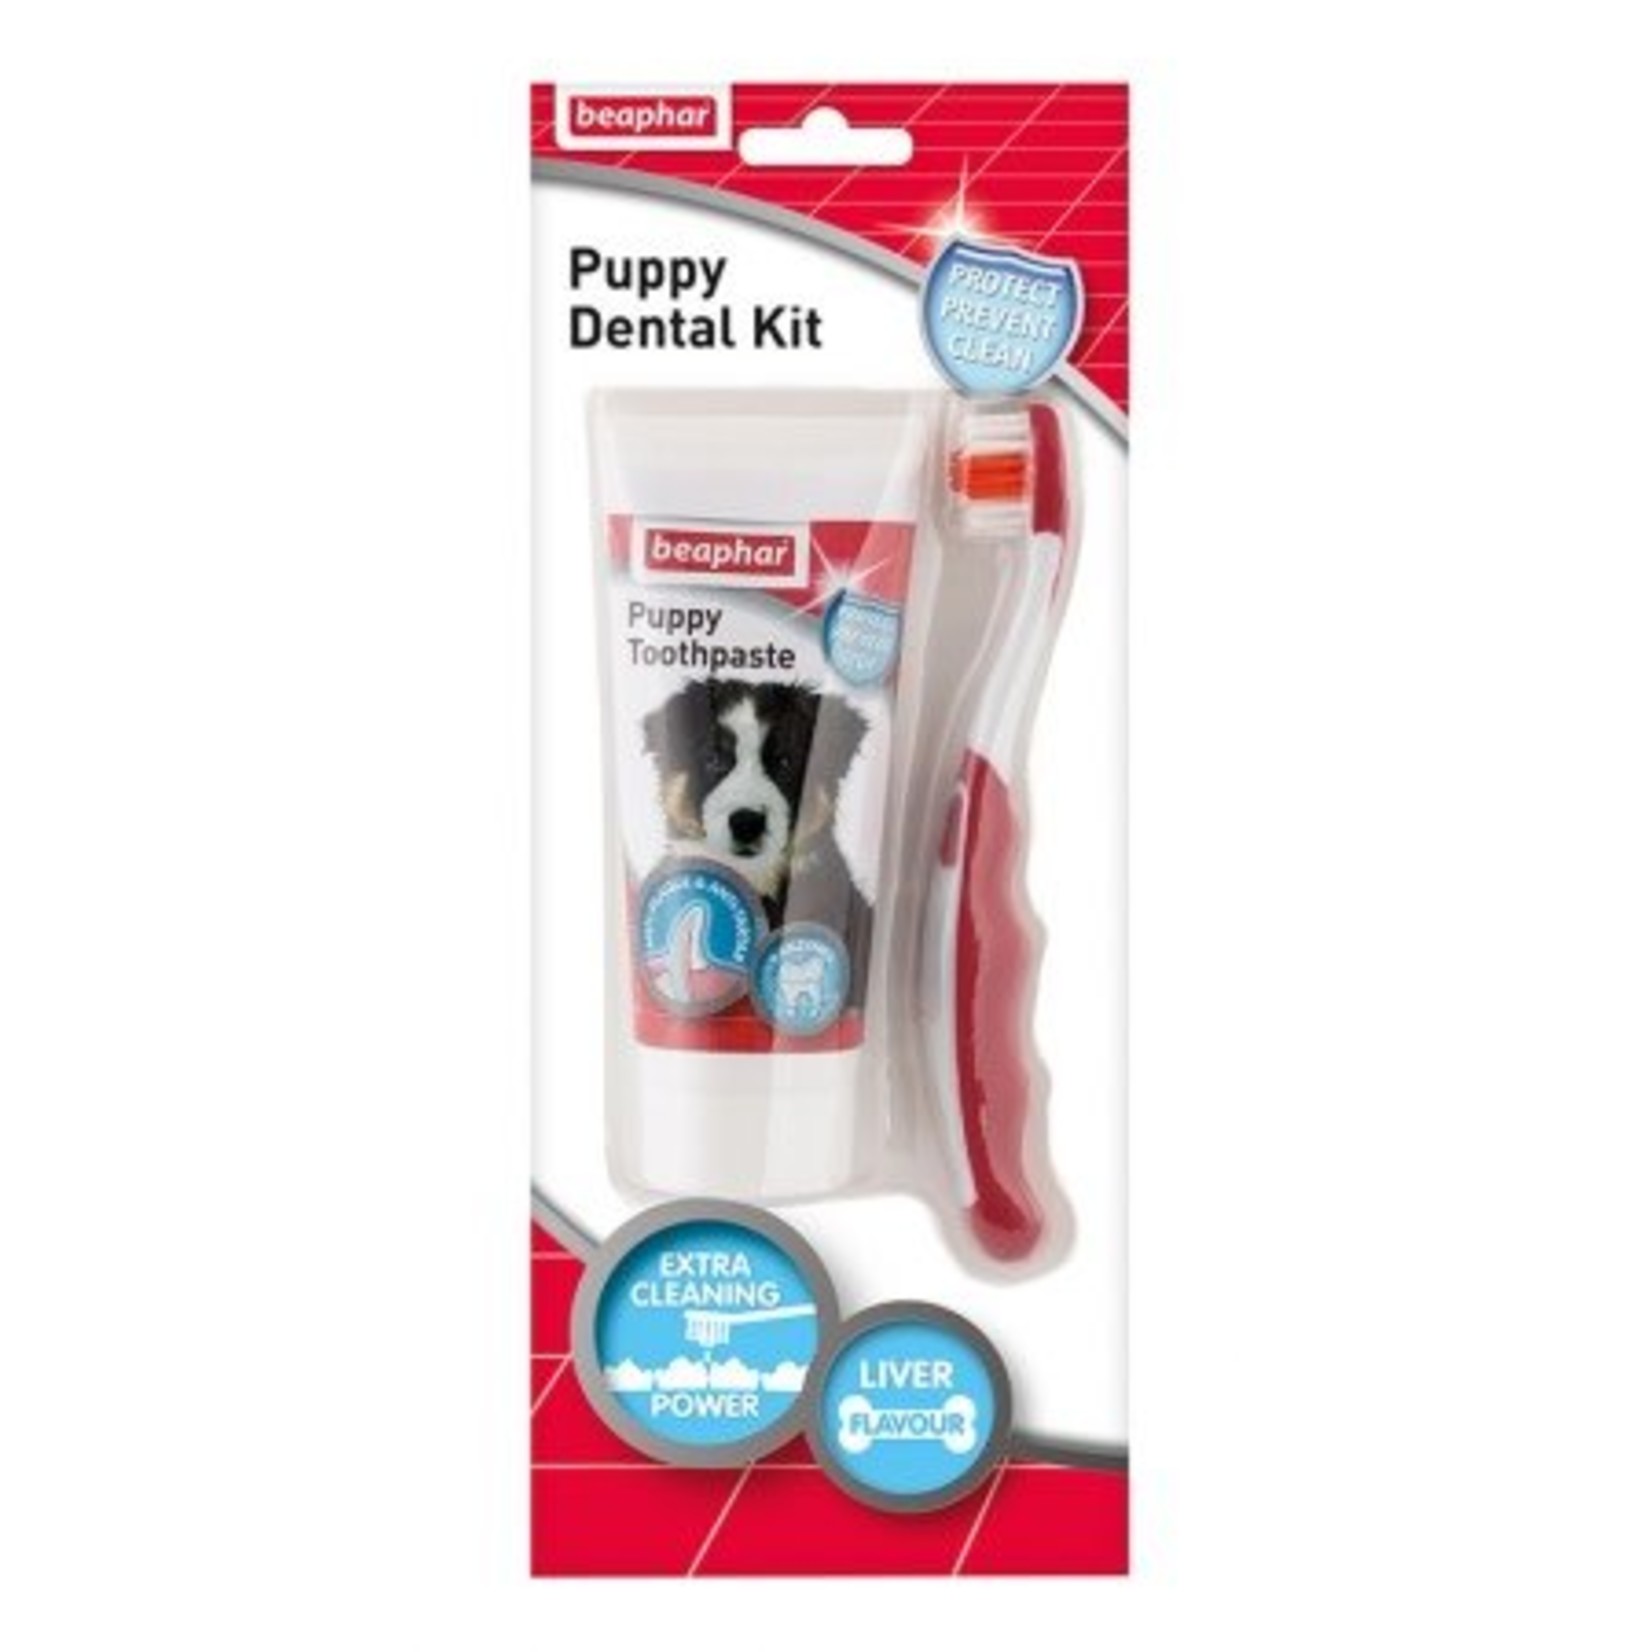 Beaphar Dental Kit for Puppies